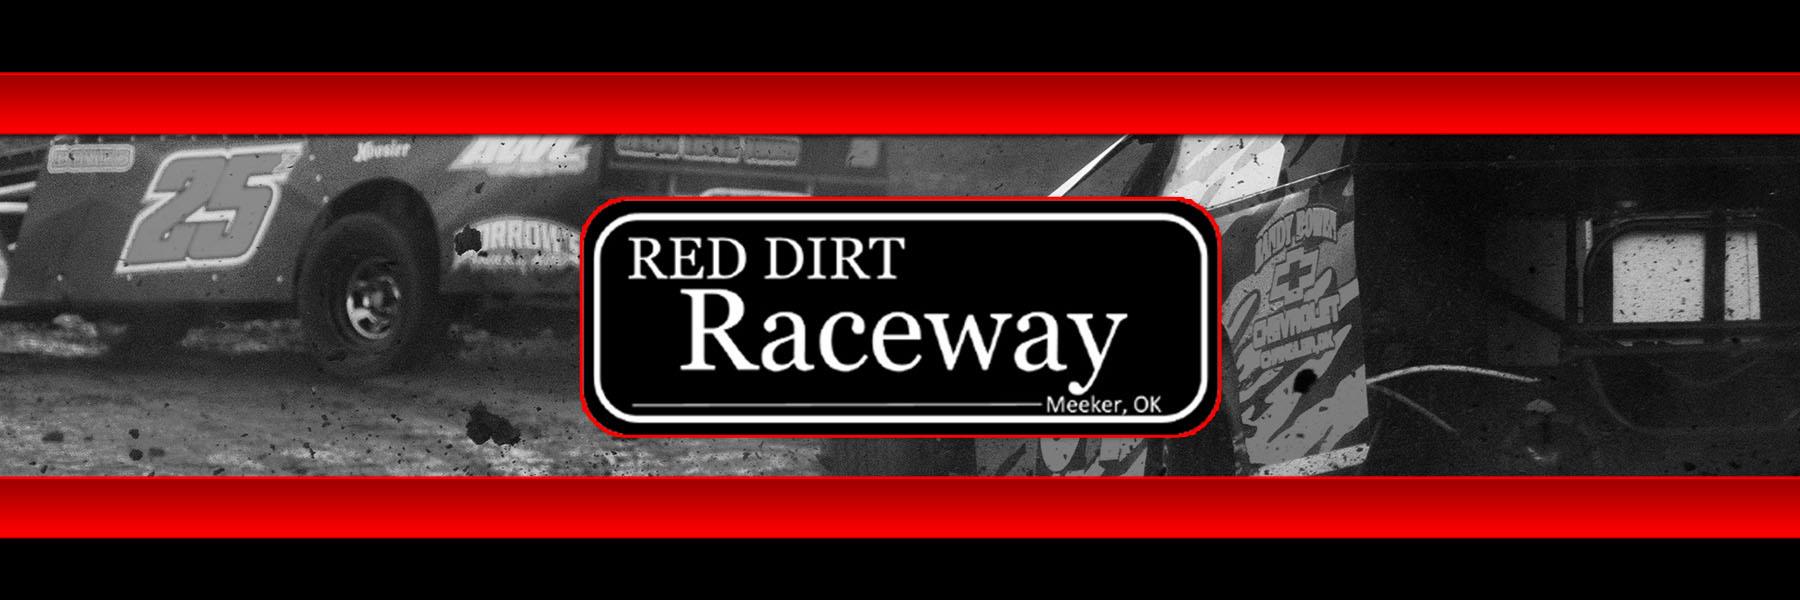 3/6/2021 - Red Dirt Raceway